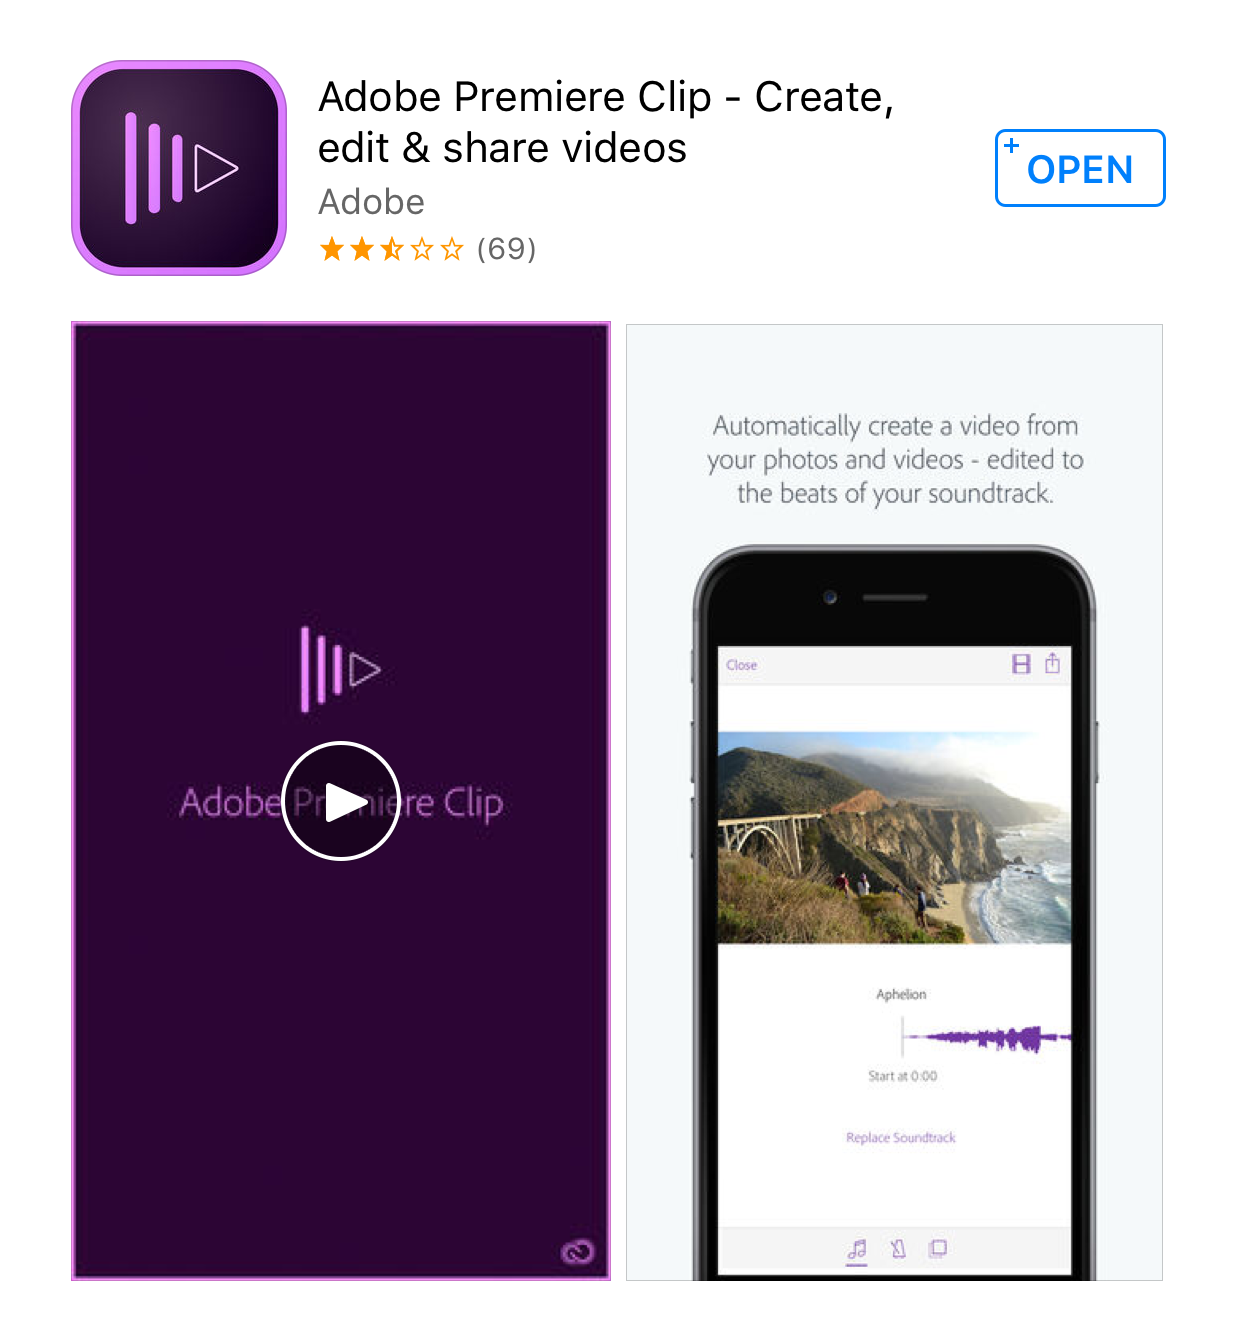 Adobe Premiere Clip in the app store